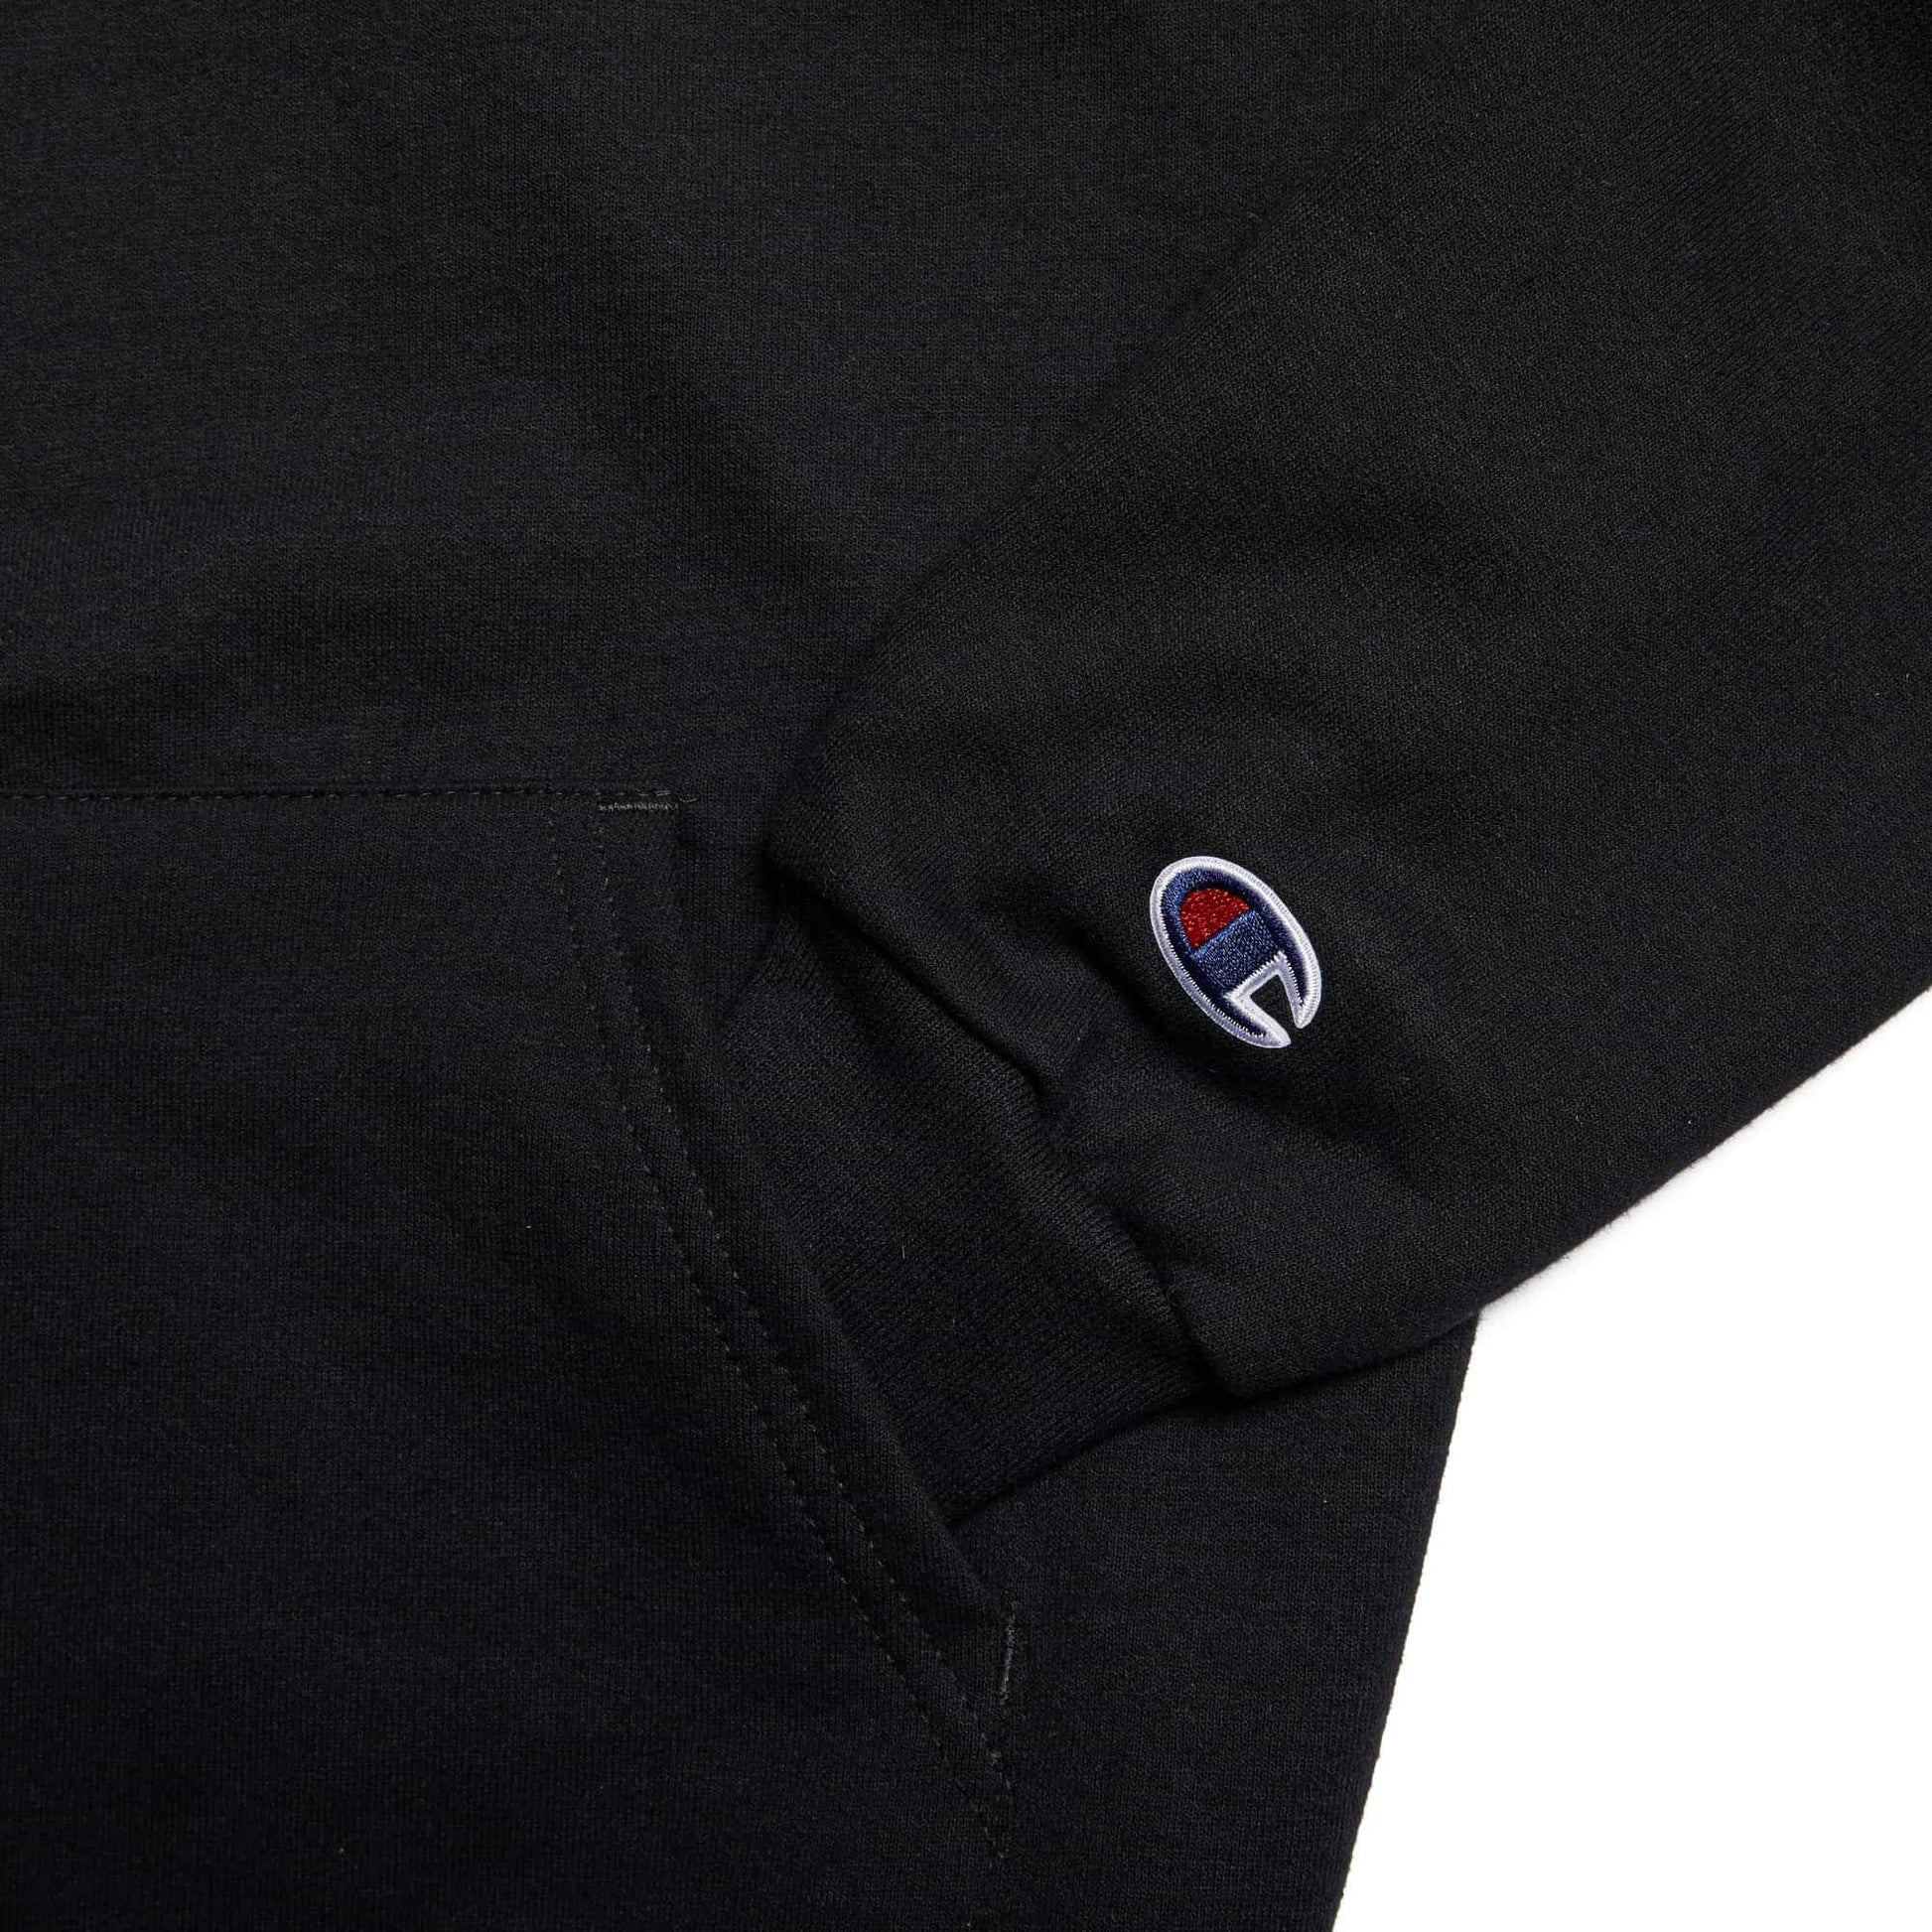 Blessings champion black hoodie sleeve logo Lecrae